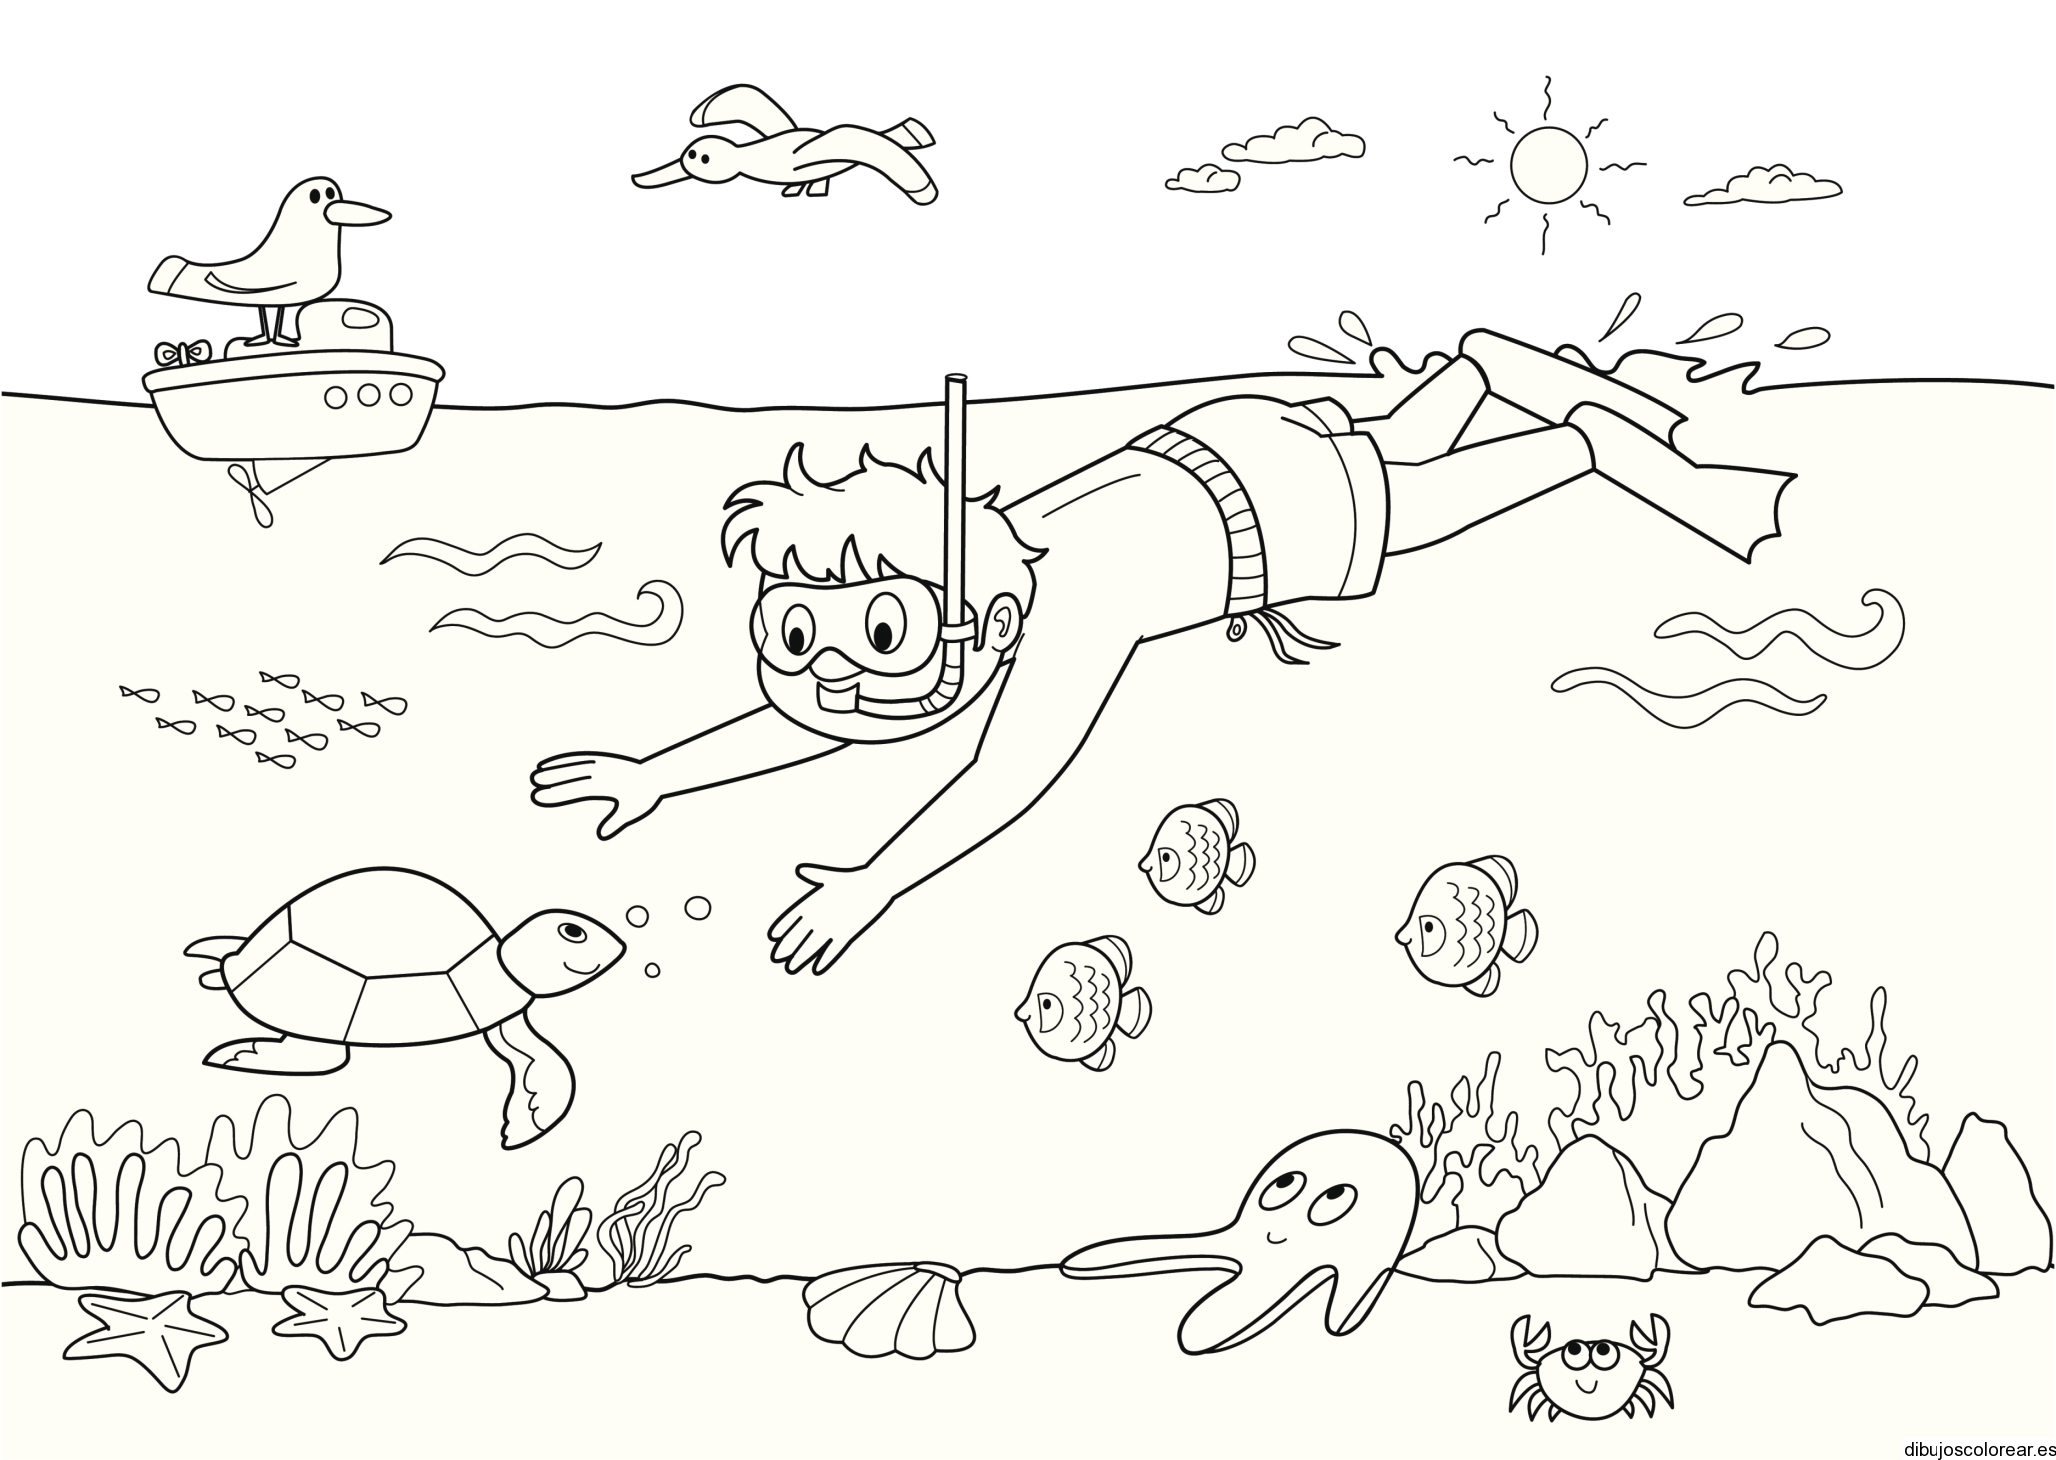 Dibujo de un niño nadando | Dibujos para Colorear